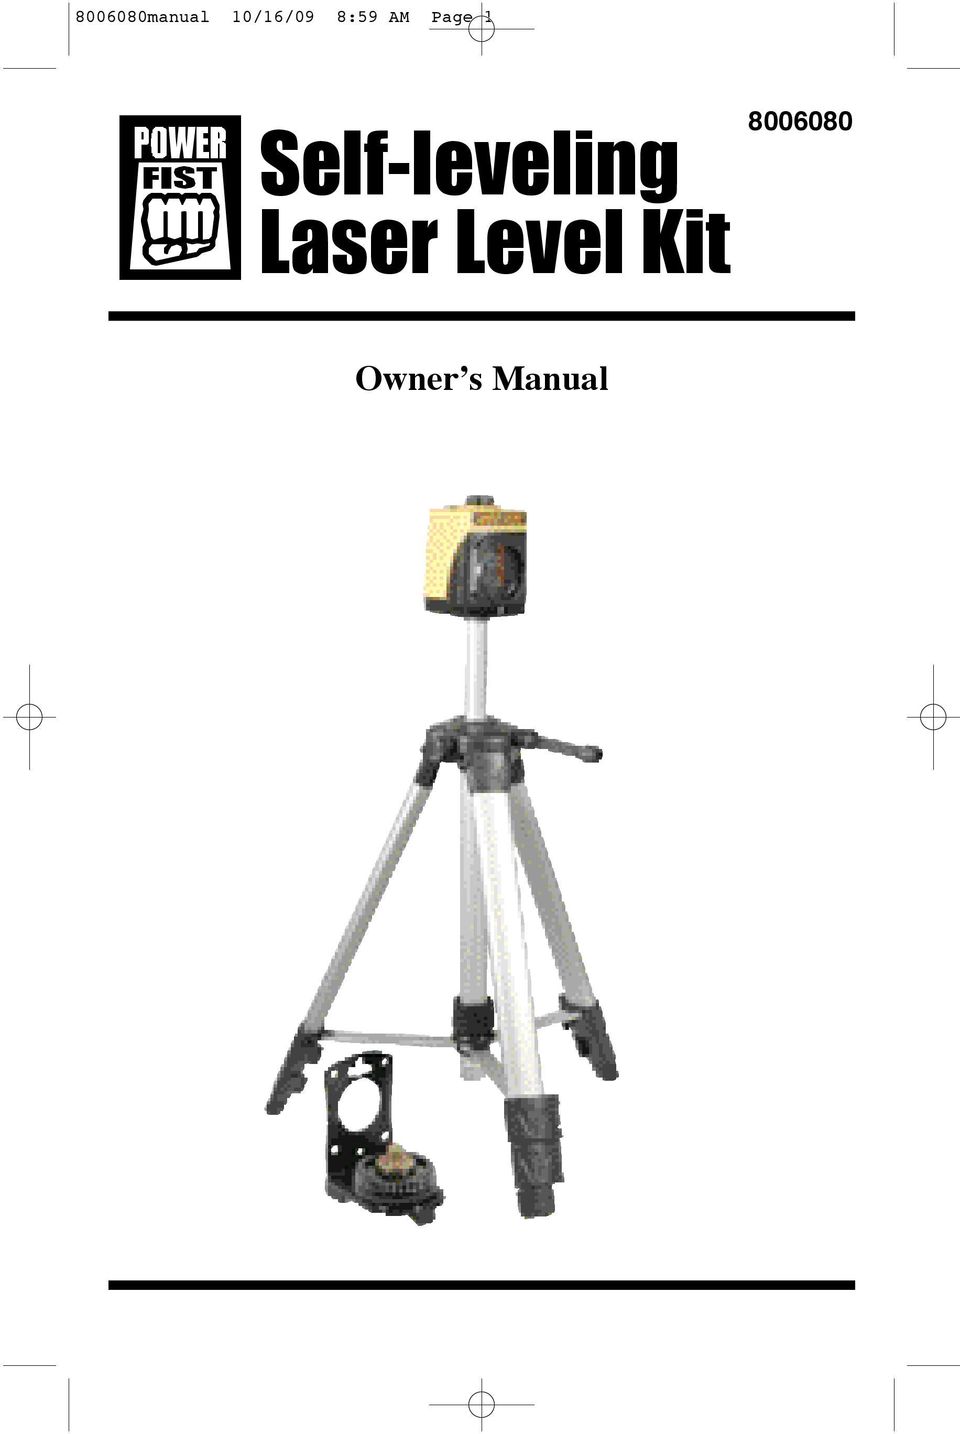 Self-leveling Laser